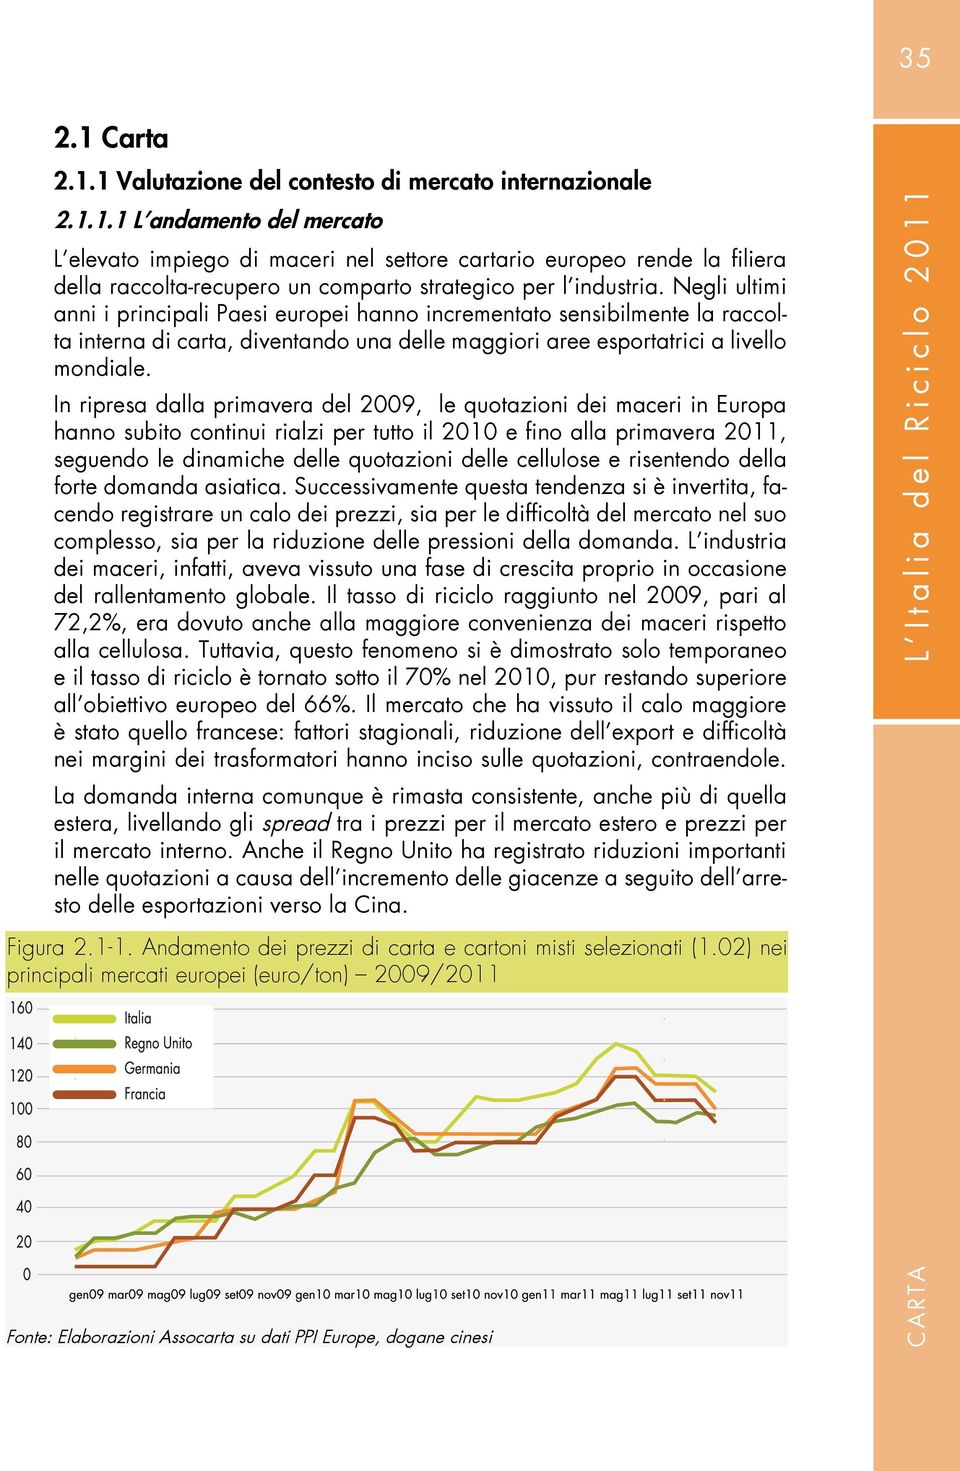 In ripresa dalla primavera del 2009, le quotazioni dei maceri in Europa hanno subito continui rialzi per tutto il 2010 e fino alla primavera 2011, seguendo le dinamiche delle quotazioni delle